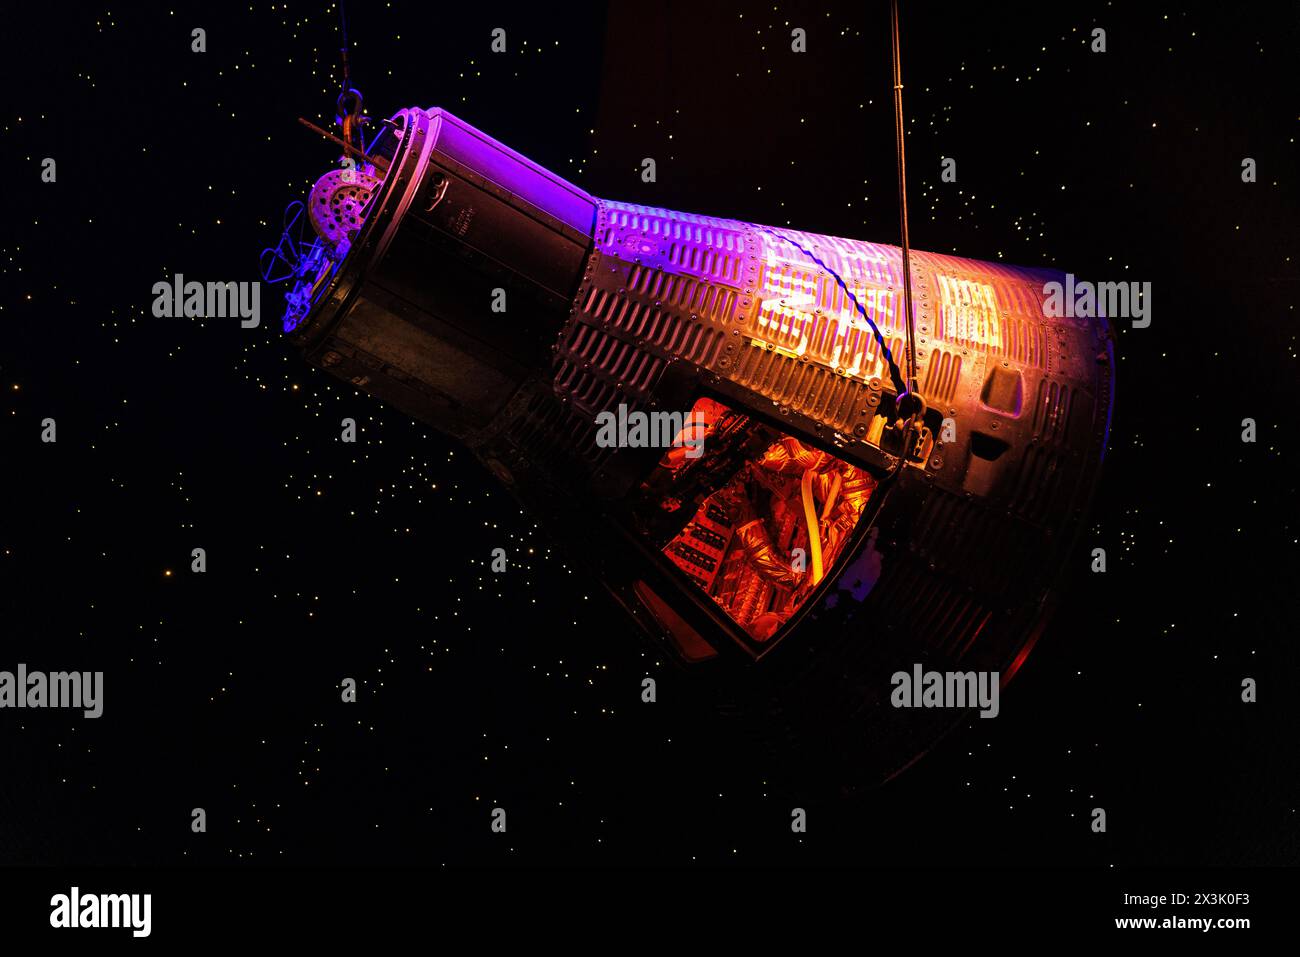 Raumkapsel in der Luft mit leuchtendem orangefarbenem Licht, johnson Space Center, houston, texas Stockfoto